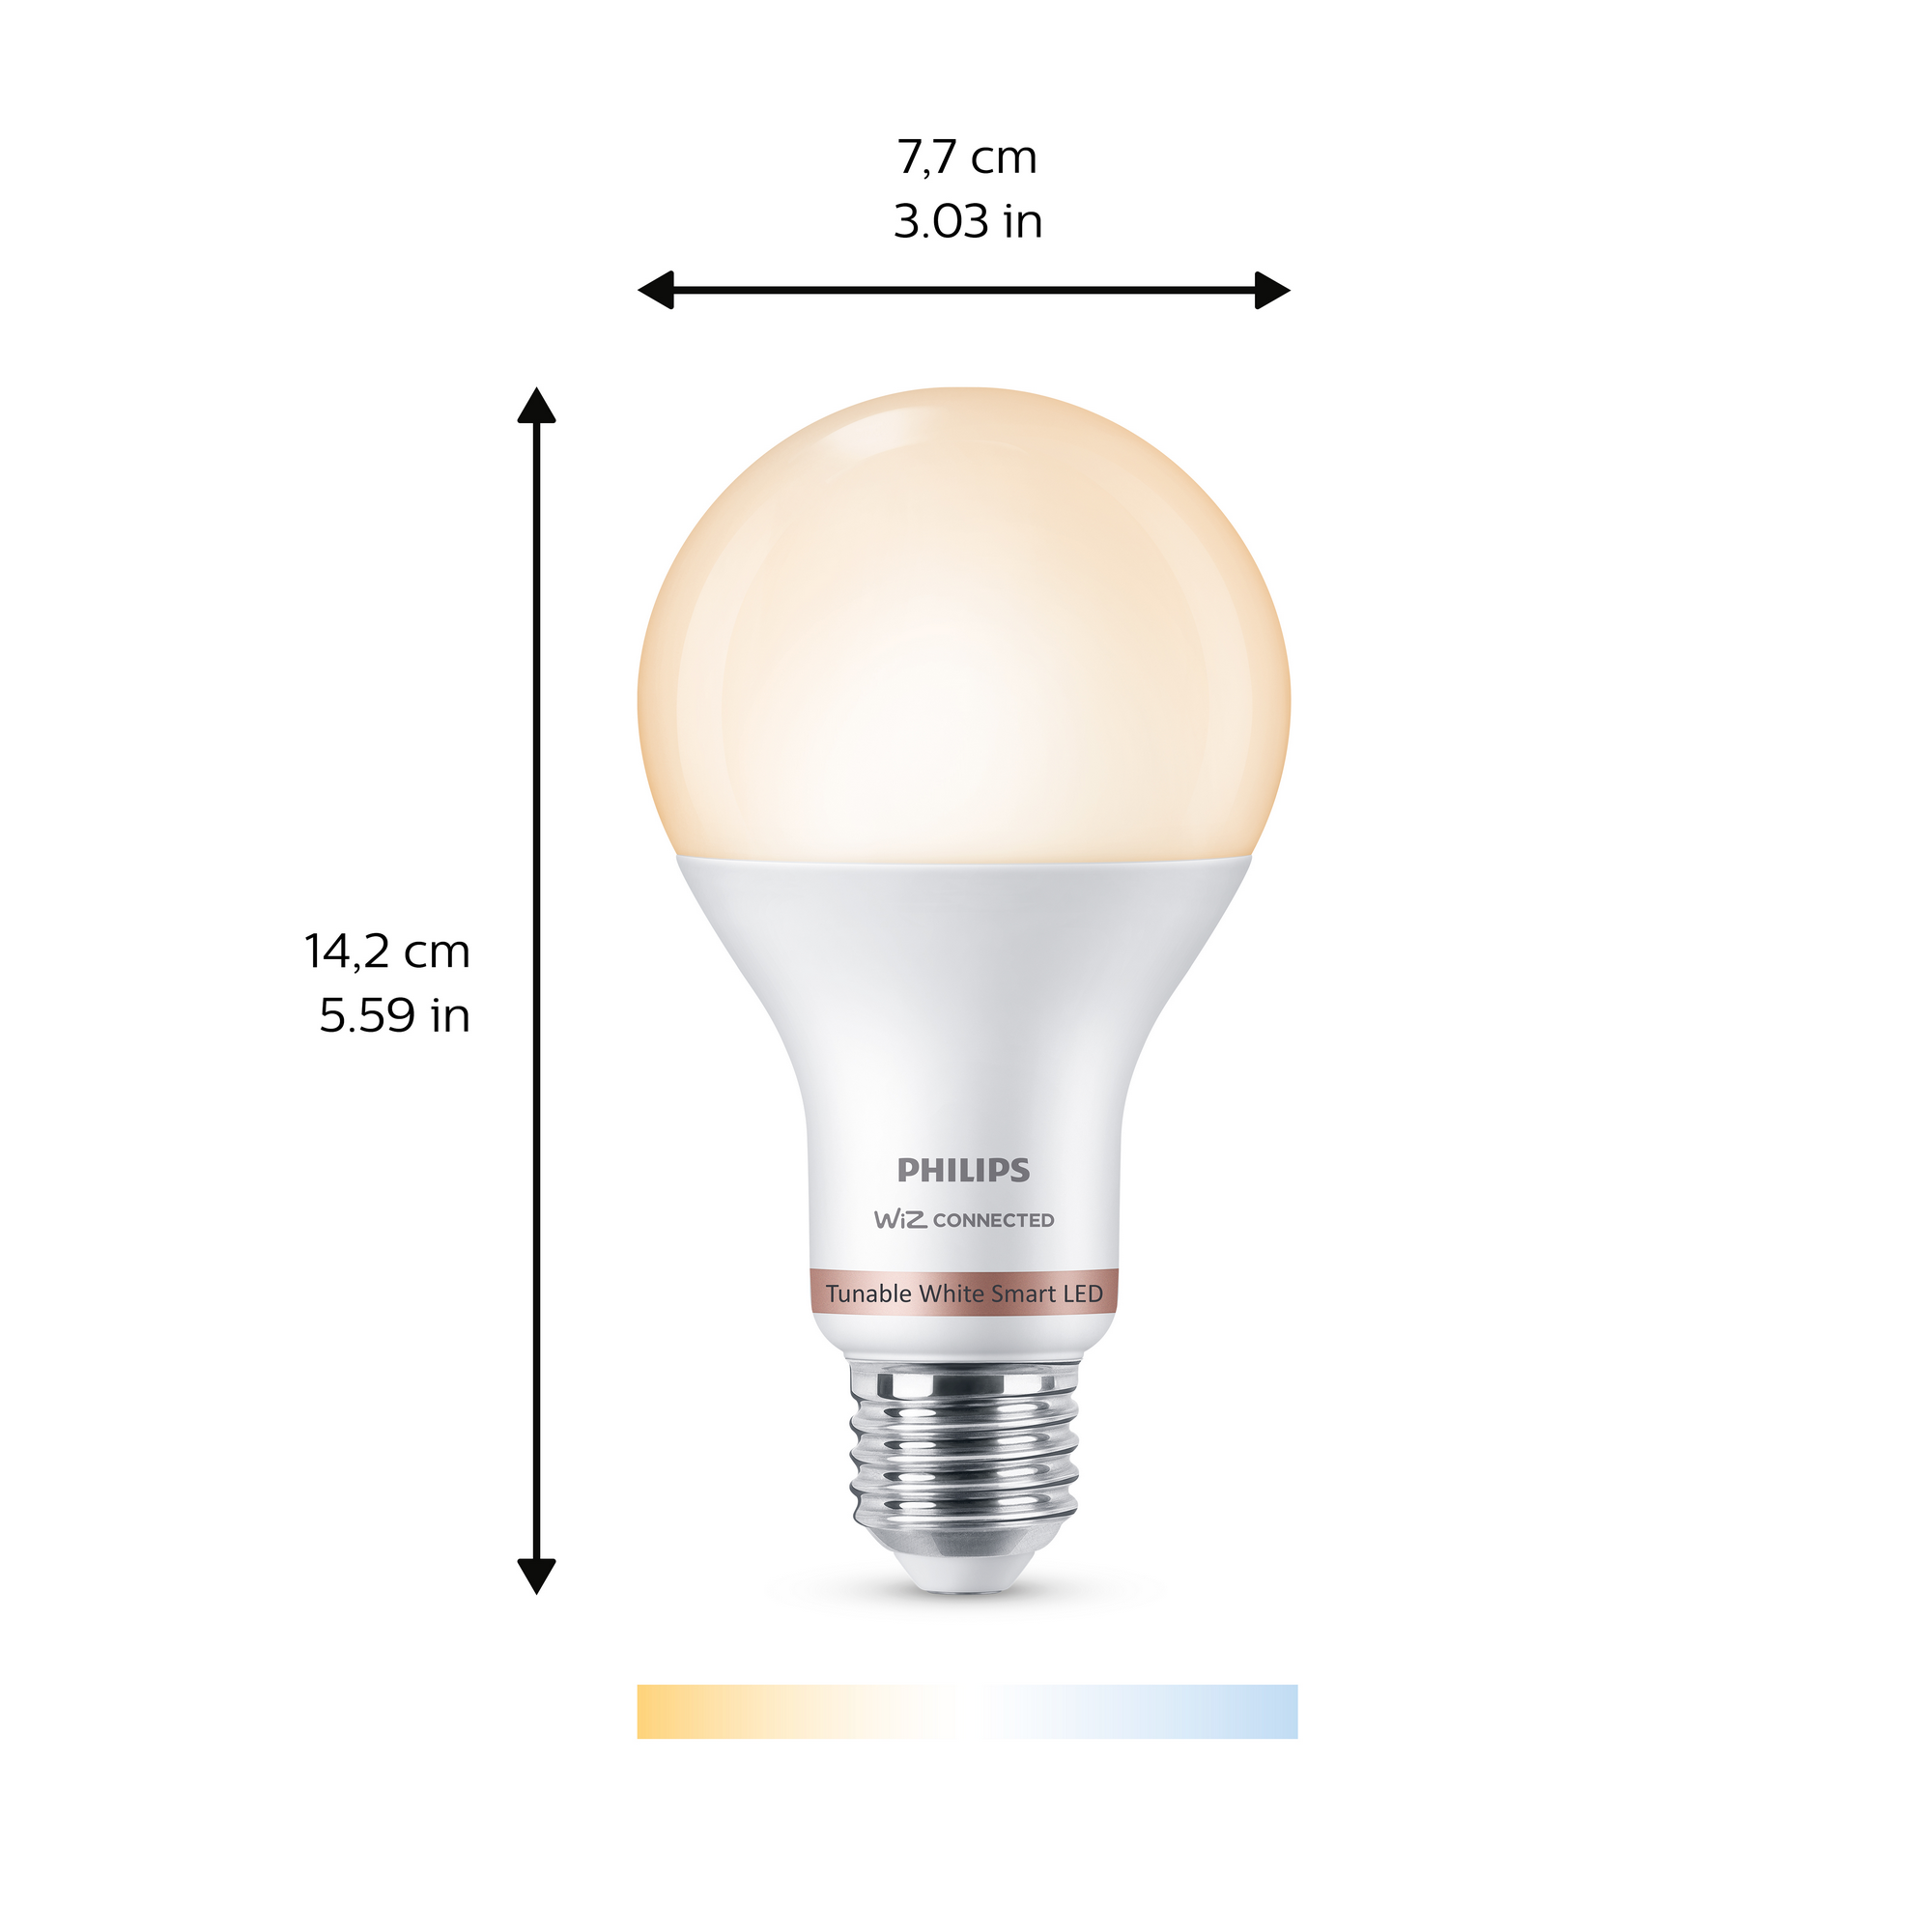 LED-Lampe \'SmartLED\' 1521 lm 2700-6500 K Glühlampe weiß E27